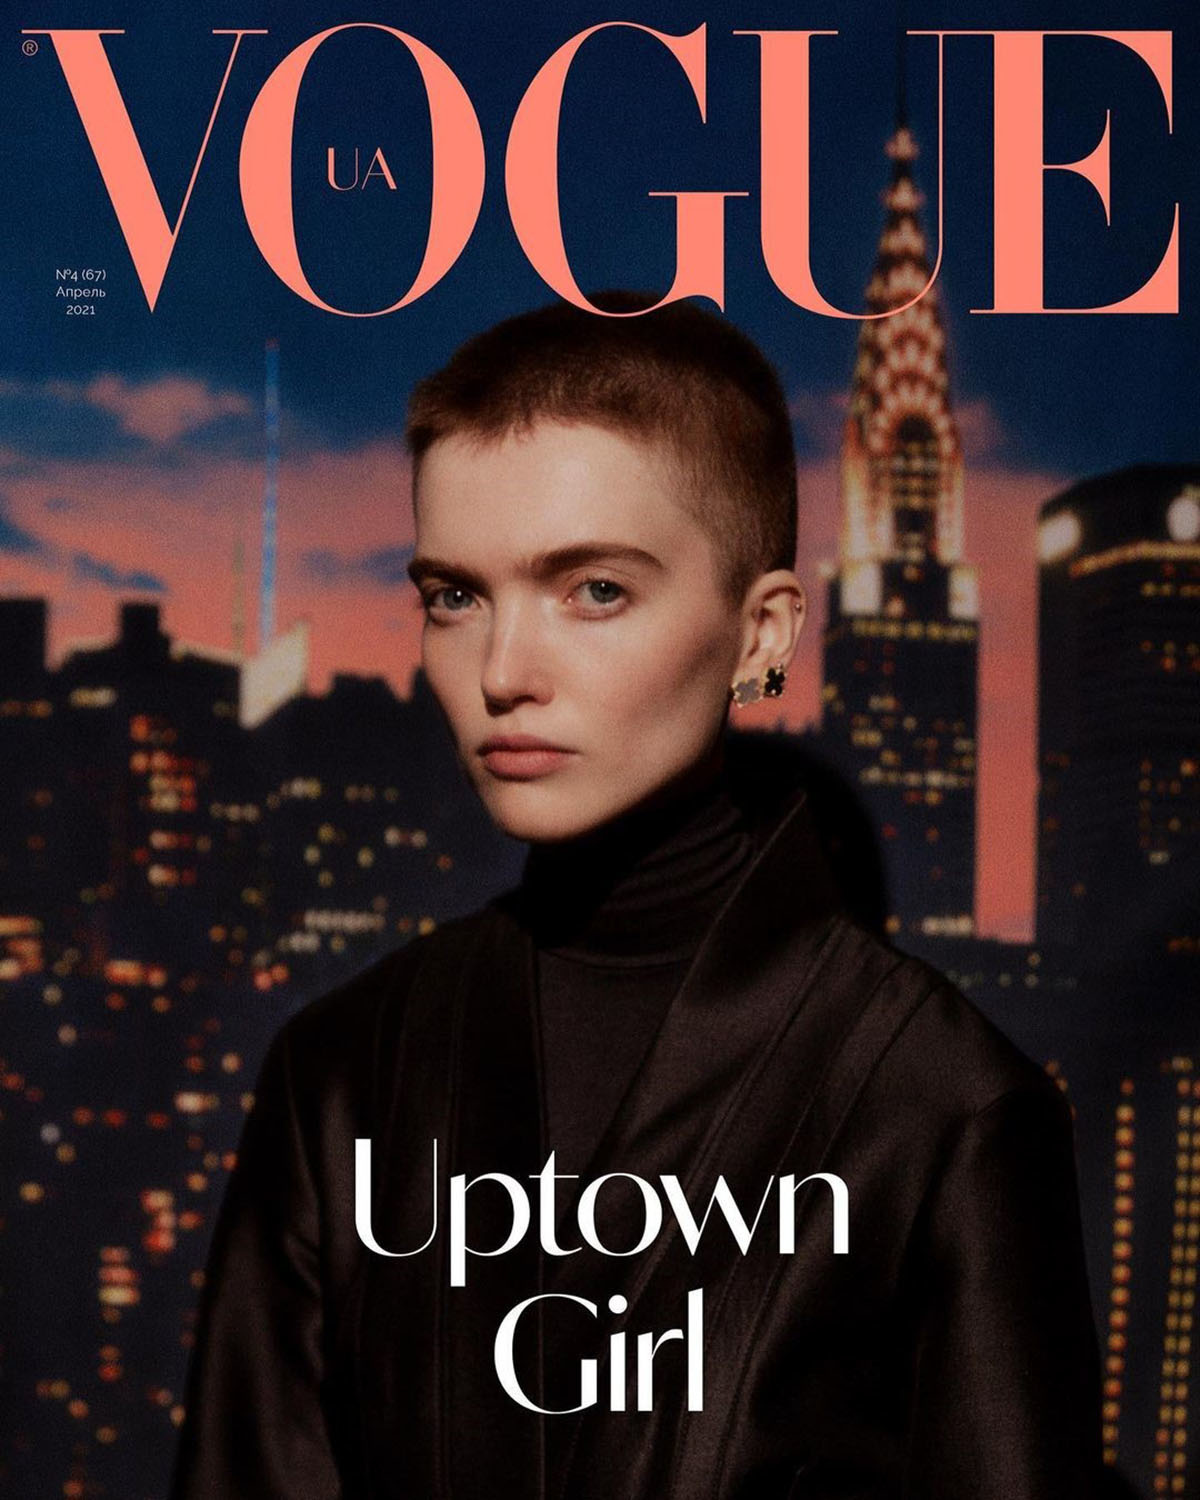 Vogue Ukraine April 2021 Cover Story Editorial